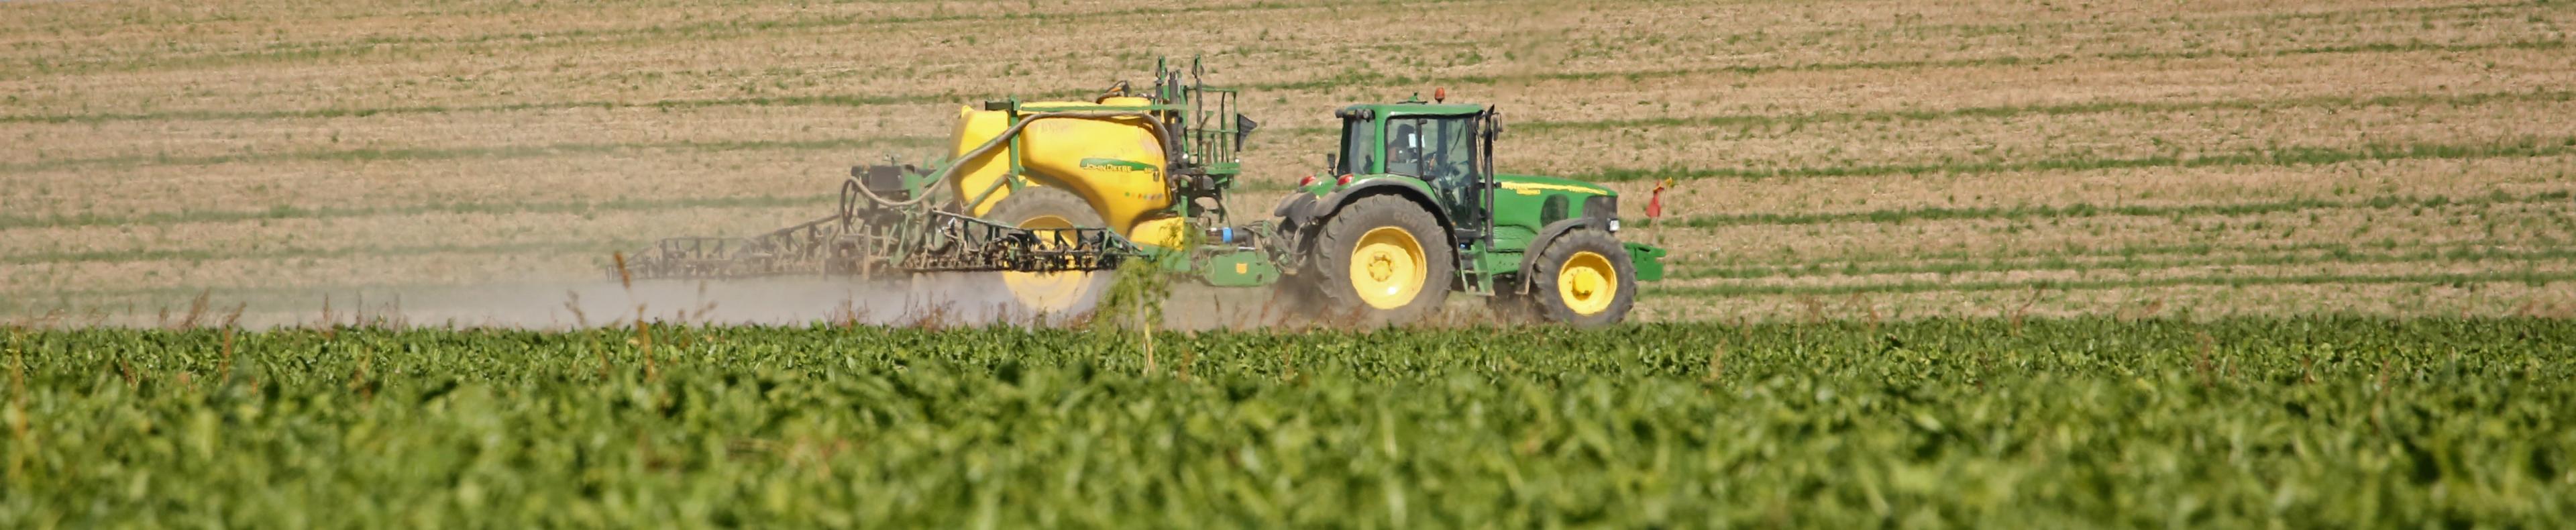 Ein Landwirt versprüht mit seinem Traktor Pestizide auf einem Acker.